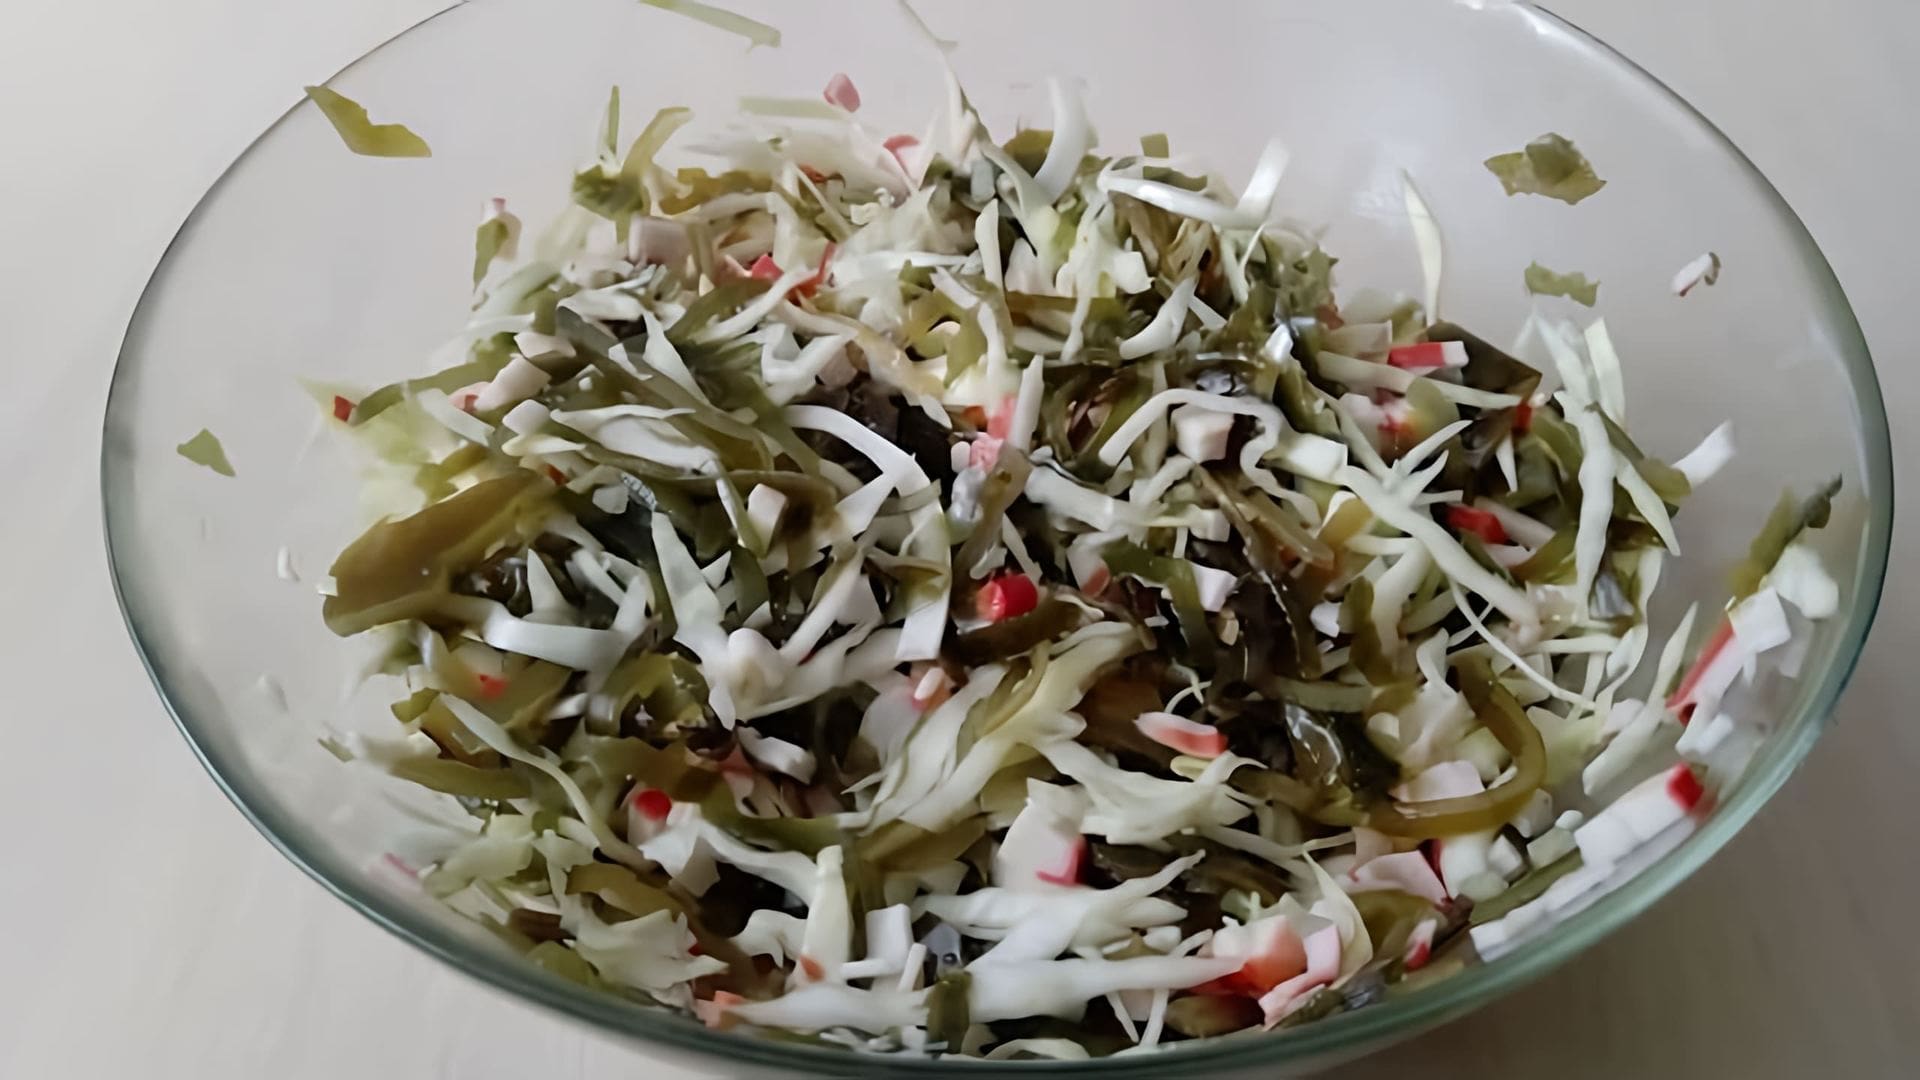 В этом видео демонстрируется процесс приготовления салата с морской капустой